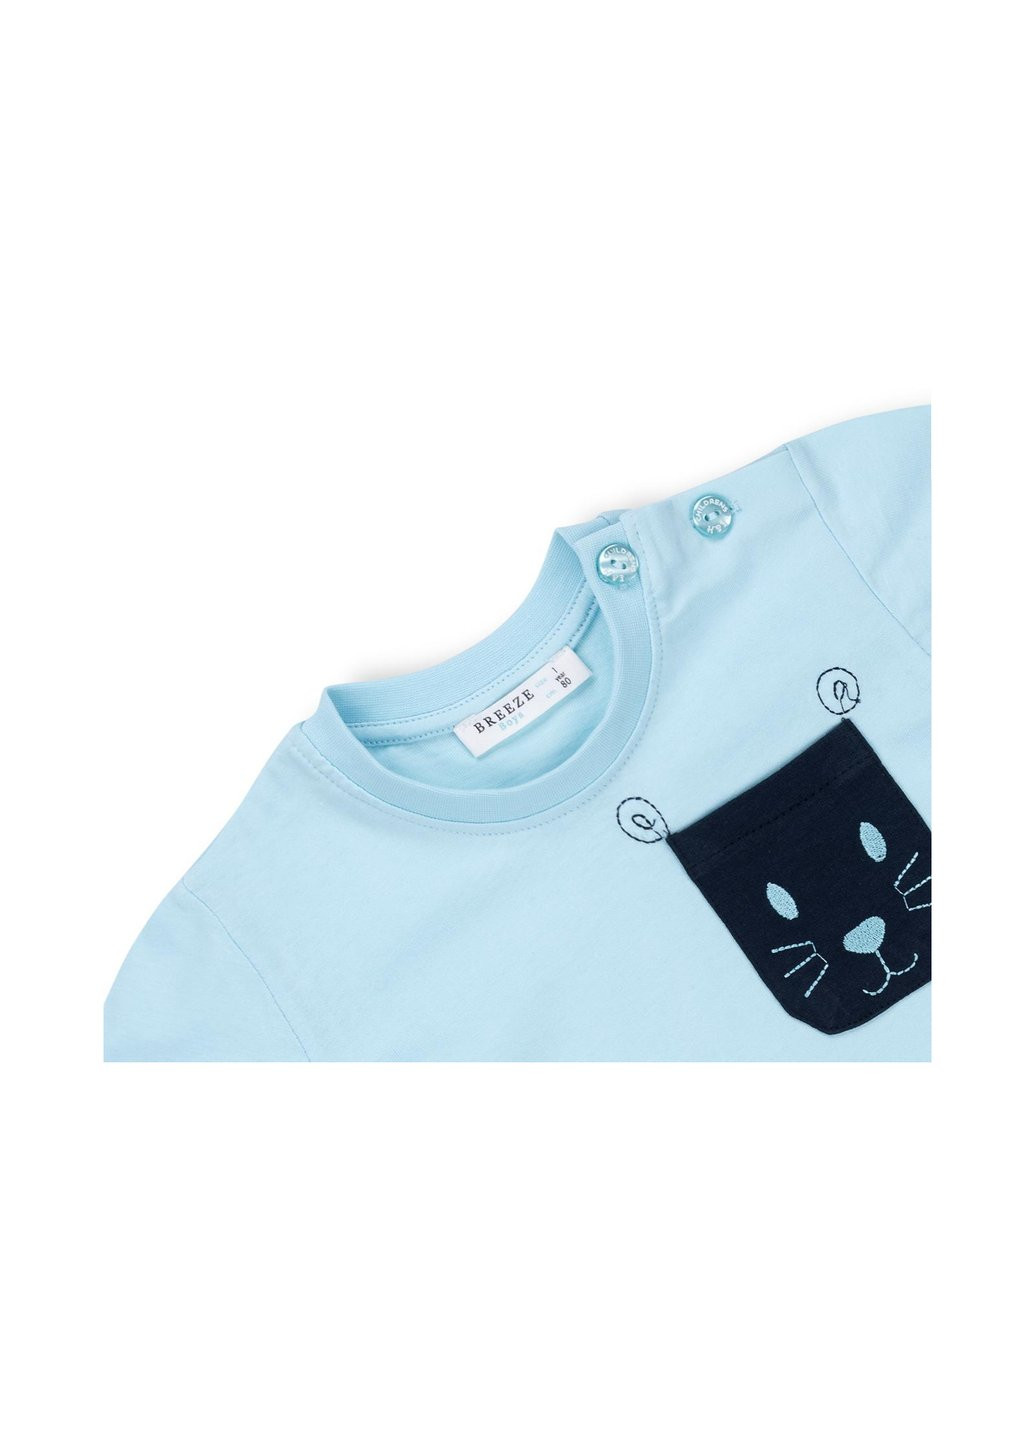 Комбинированный летний набор детской одежды с карманчиками (10234-104g-blue) Breeze